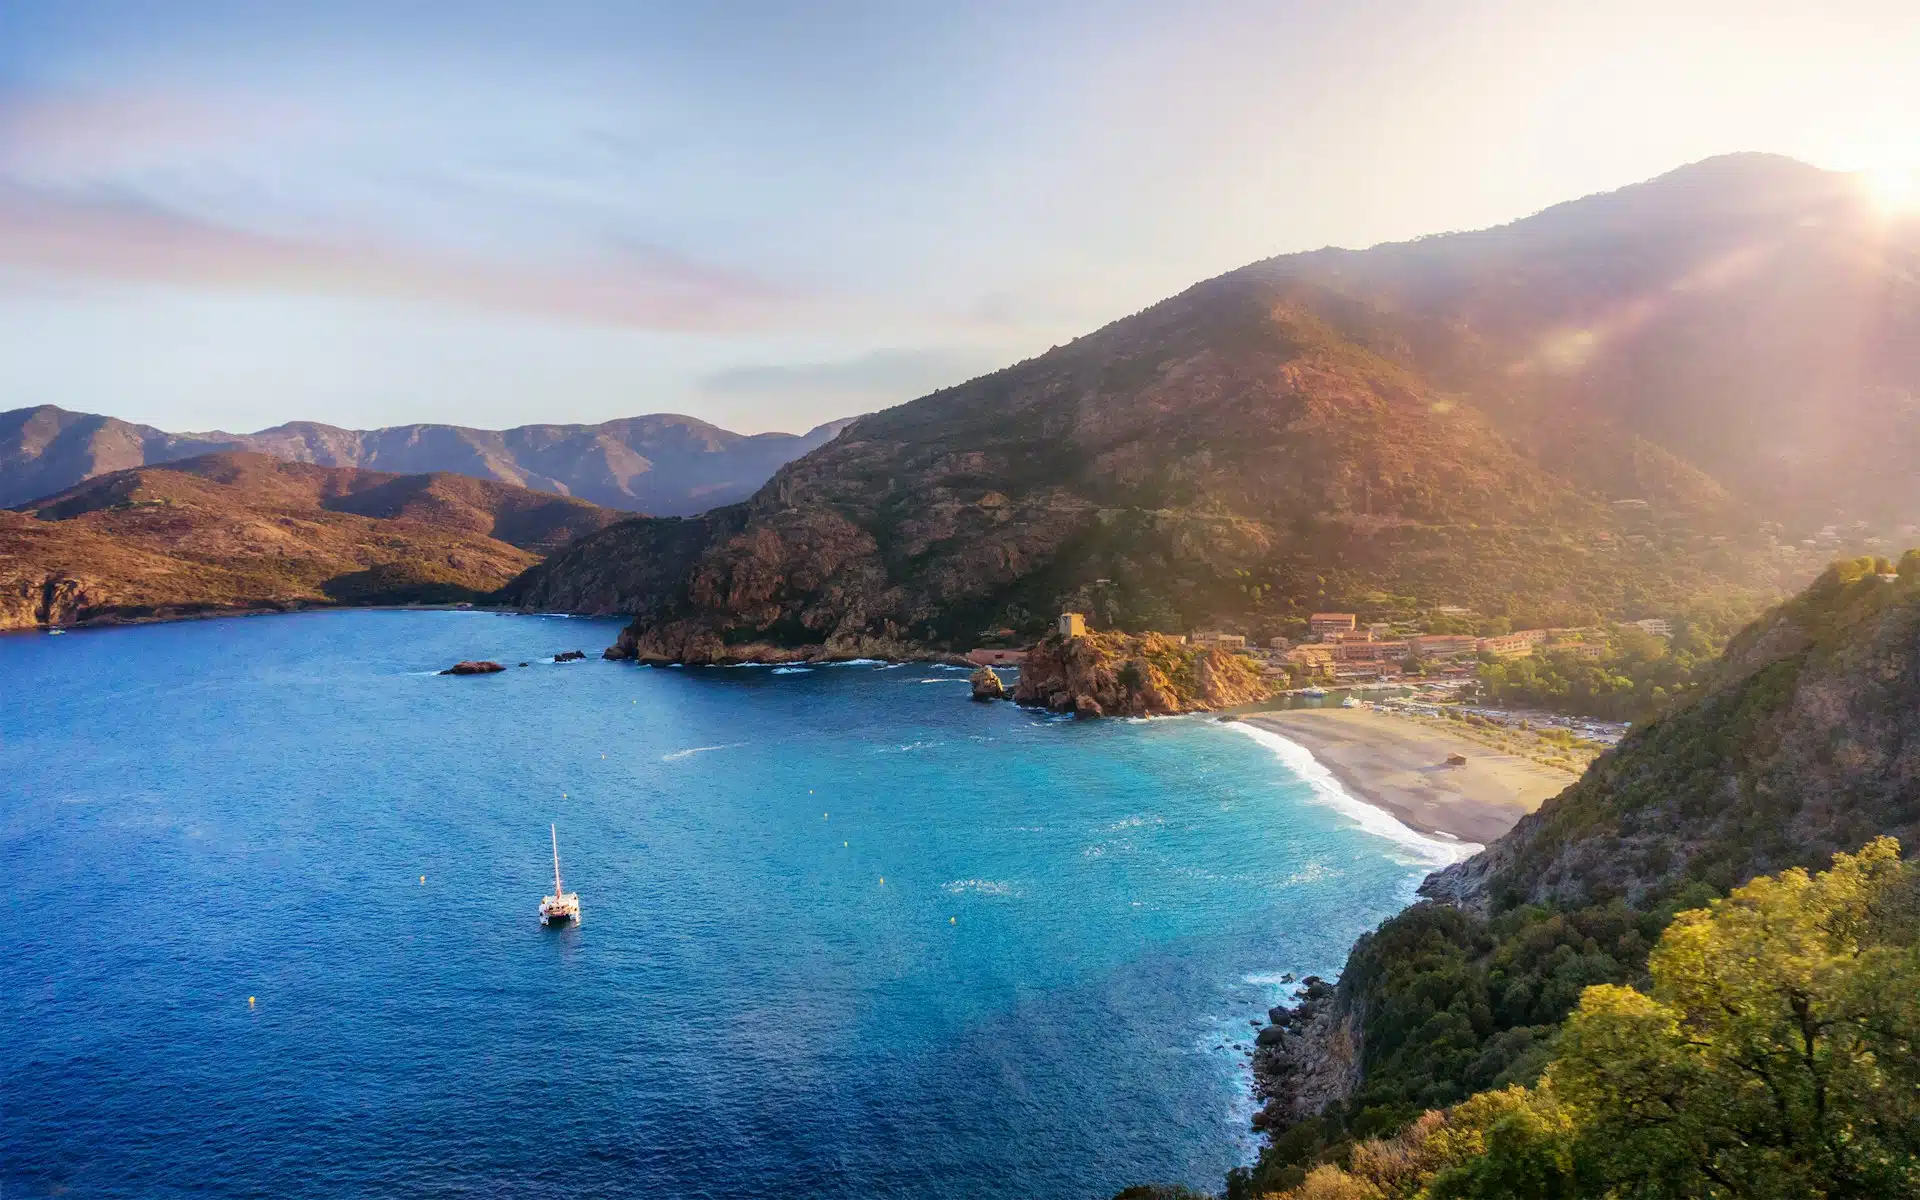 Vacances en Corse : les plus beaux endroits à visiter ?